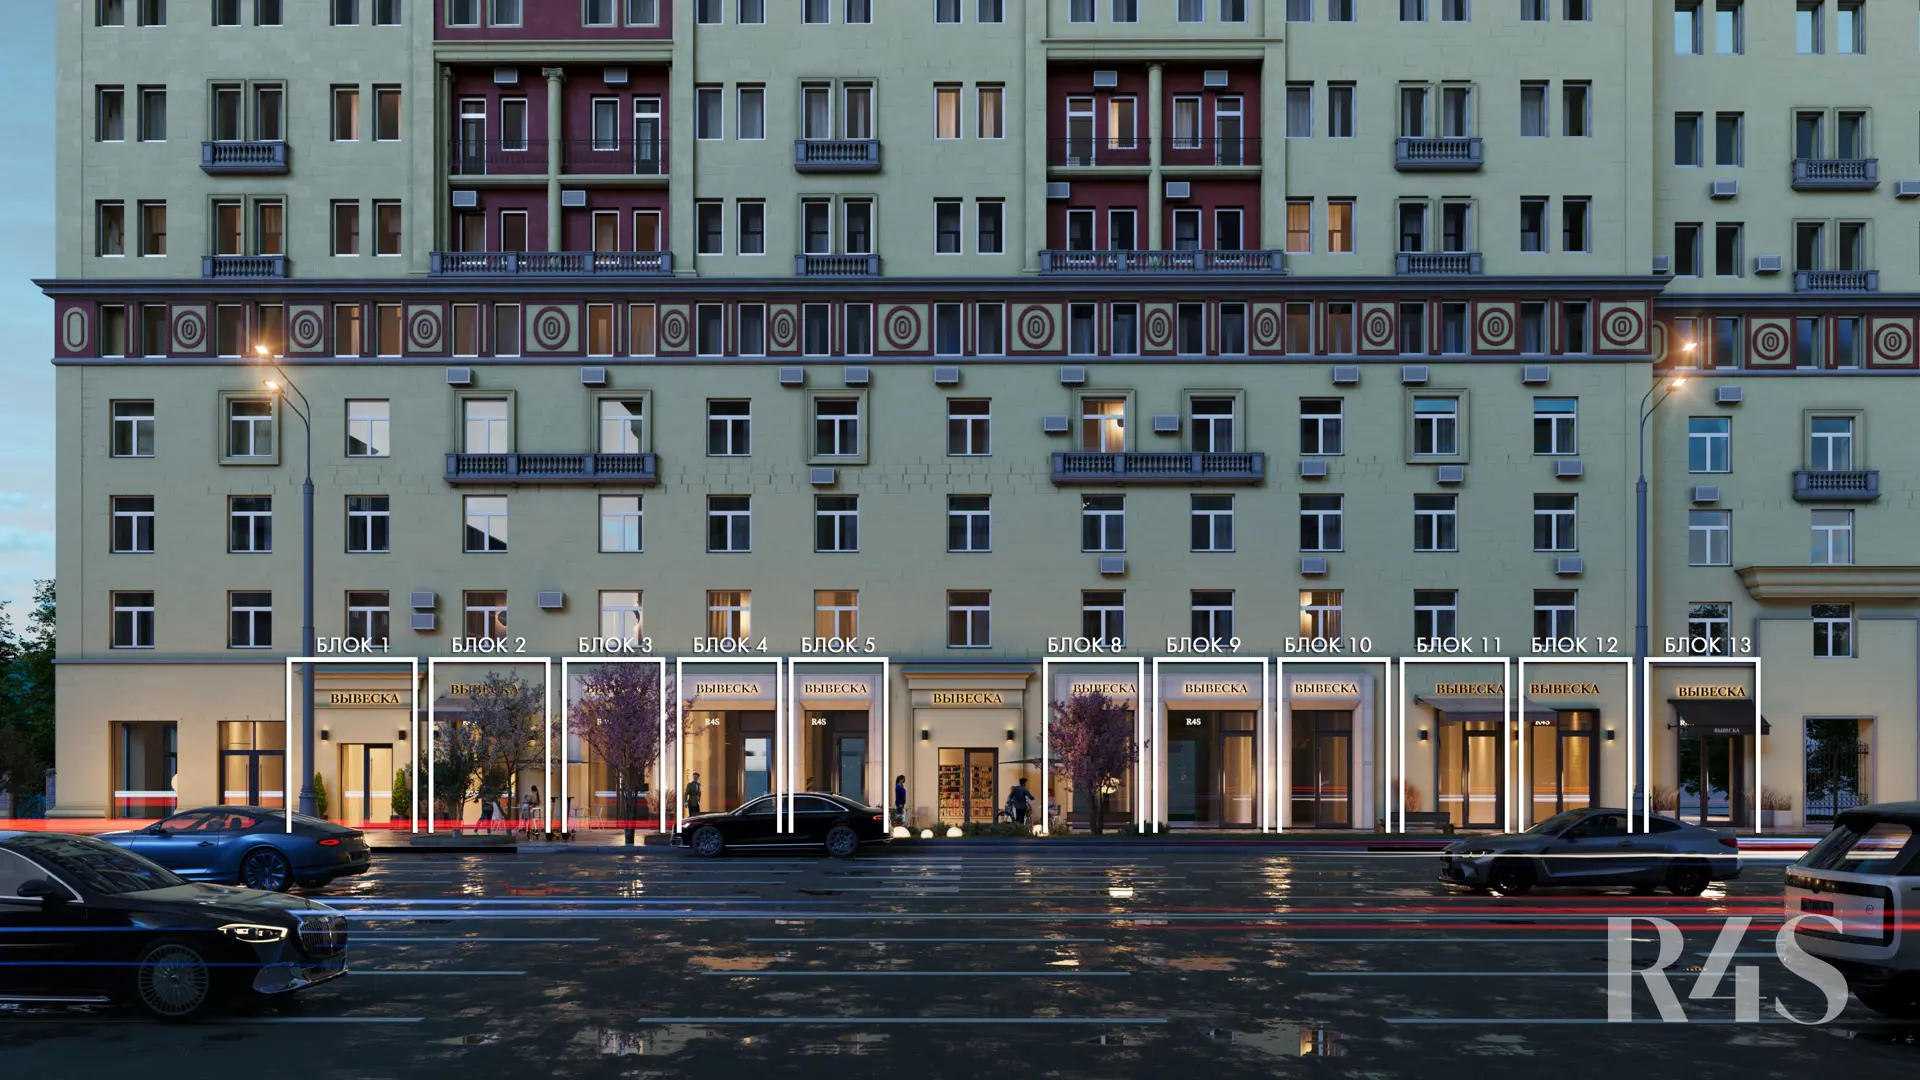 Продажа торговых помещений площадью 14.6 - 91.7 м2 в Москве:  Земляной Вал, 25 R4S | Realty4Sale